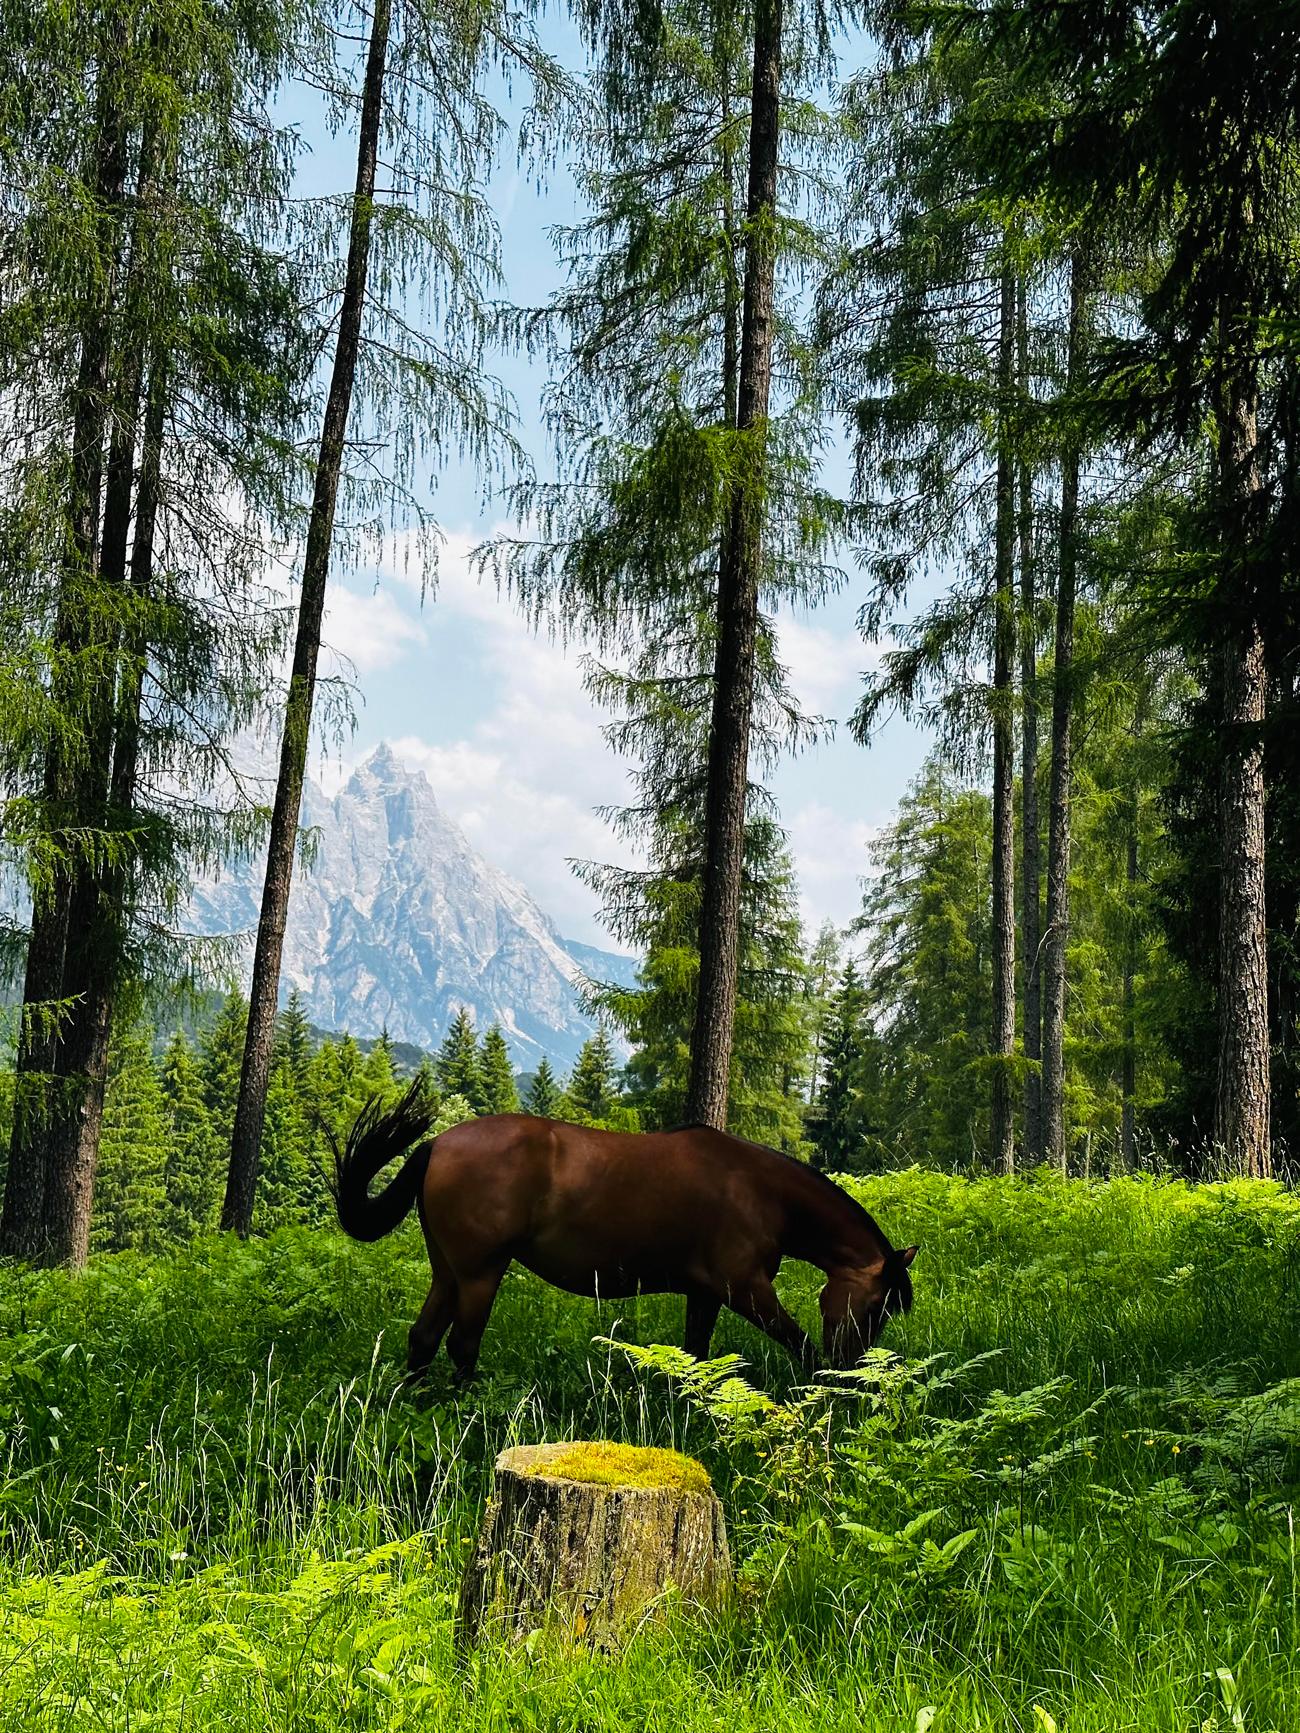 一匹棕色的马在一片阳光普照的森林空地上吃草，周围是高大的树木. 在晴朗的天空下，一座山峰在背景中清晰可见.